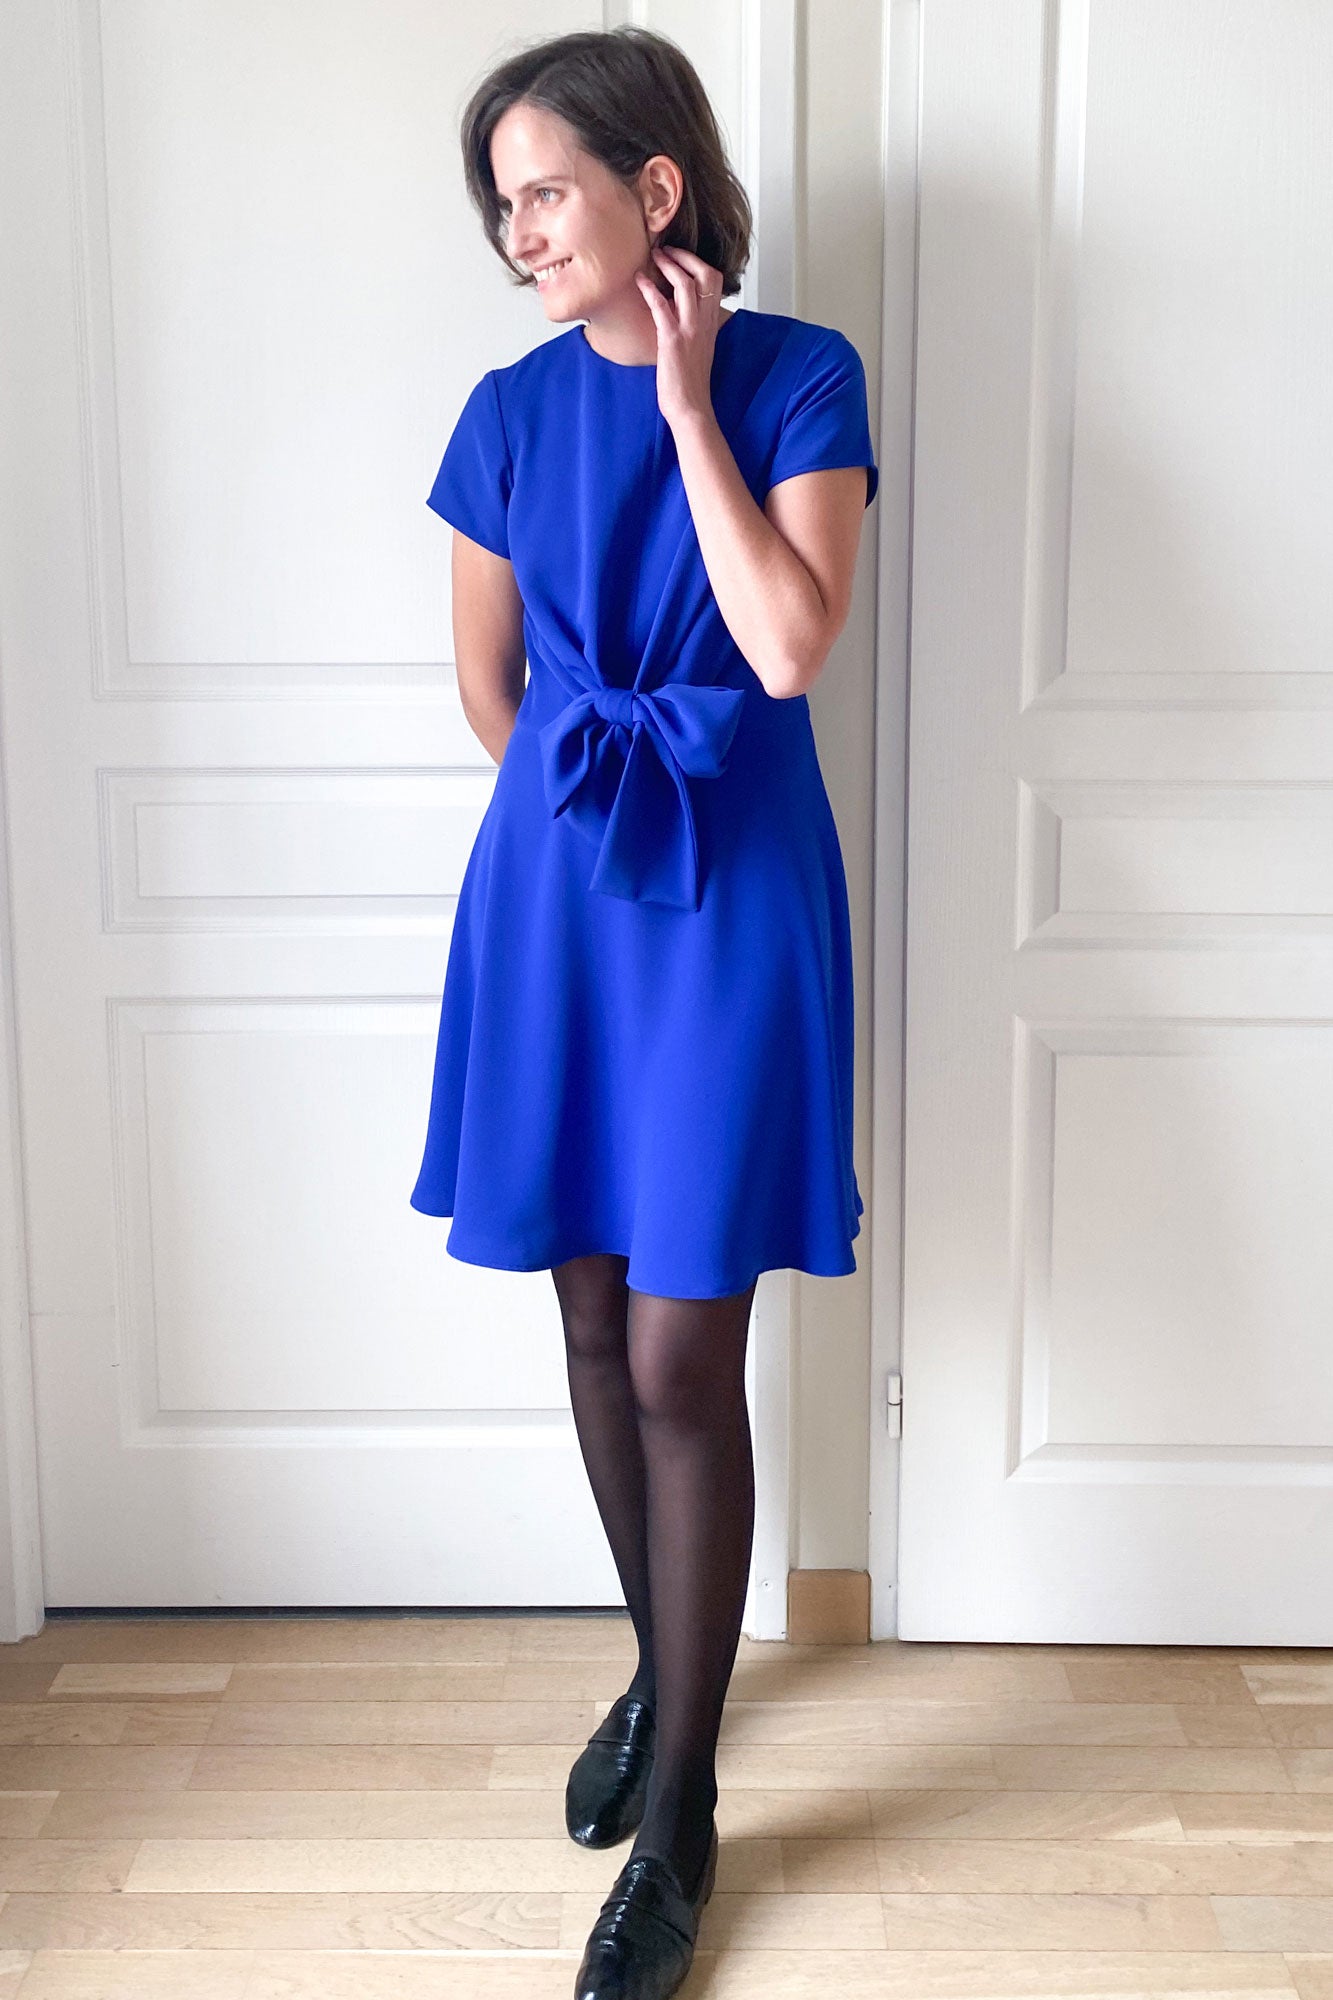 patron couture robe patineuse femme pdf bleu électrique gros noeud cérémonie invitée mariage fête courte sur mesure personnalisable atelier charlotte auzou